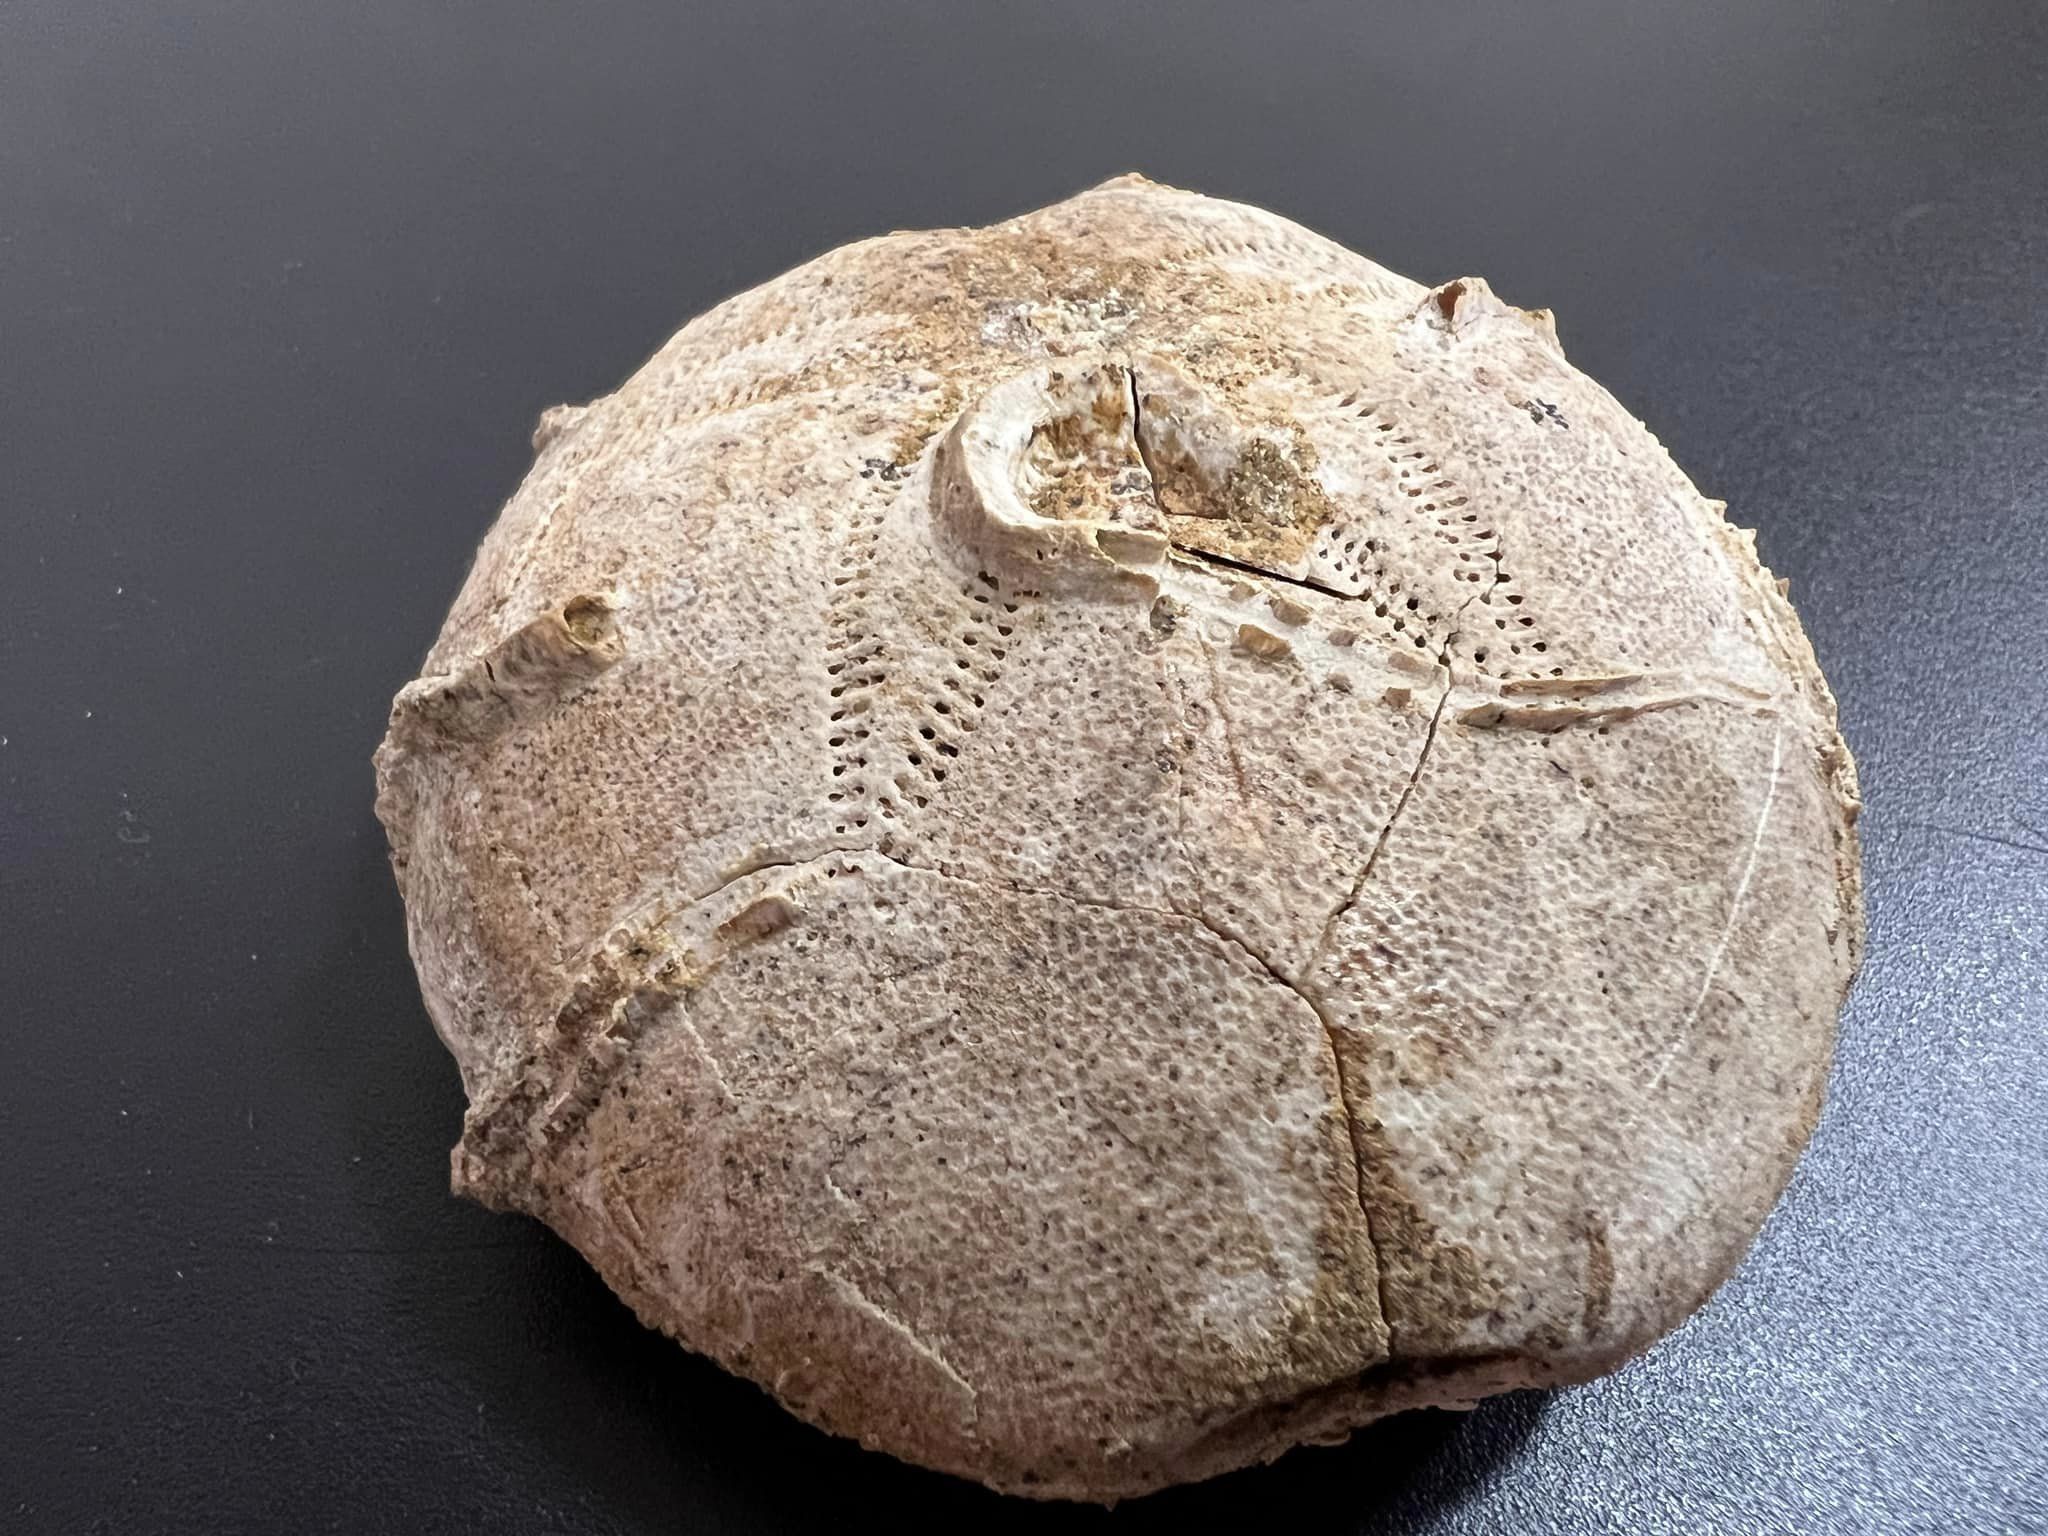 Київські митники знайшли в посилці панцир морського їжака, якому понад 160 млн років